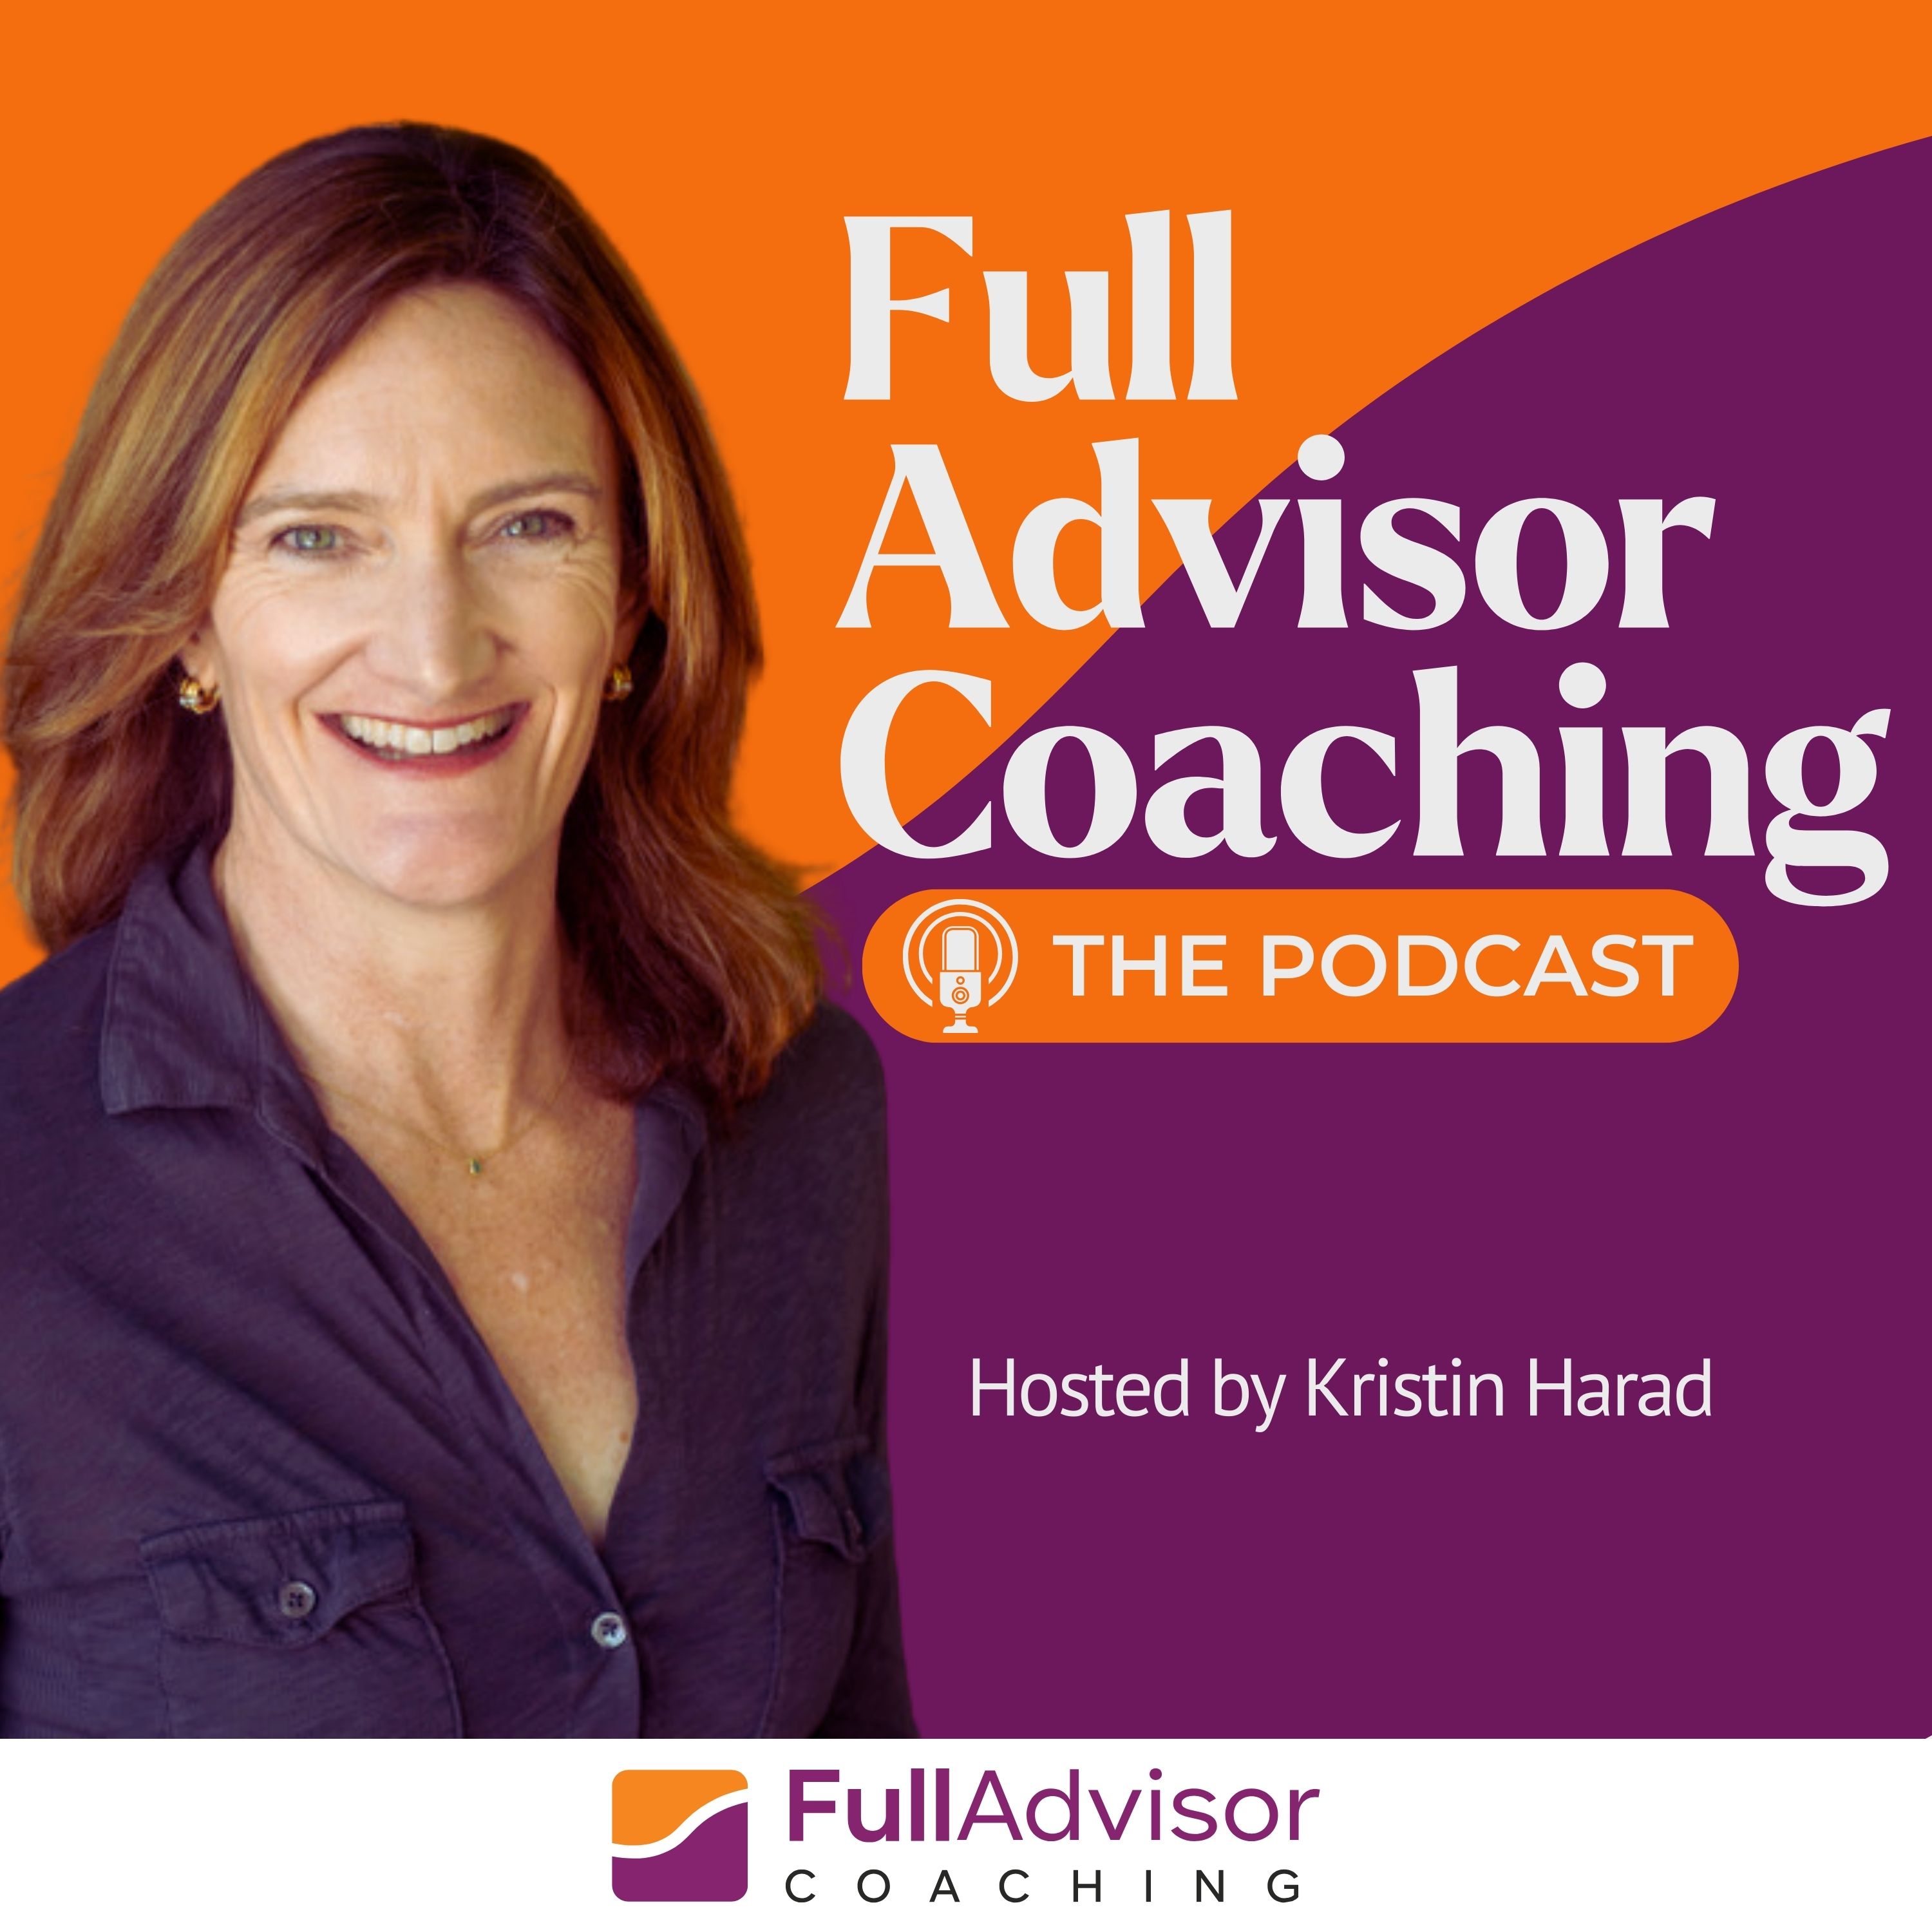 Full Advisor Coaching - The Podcast